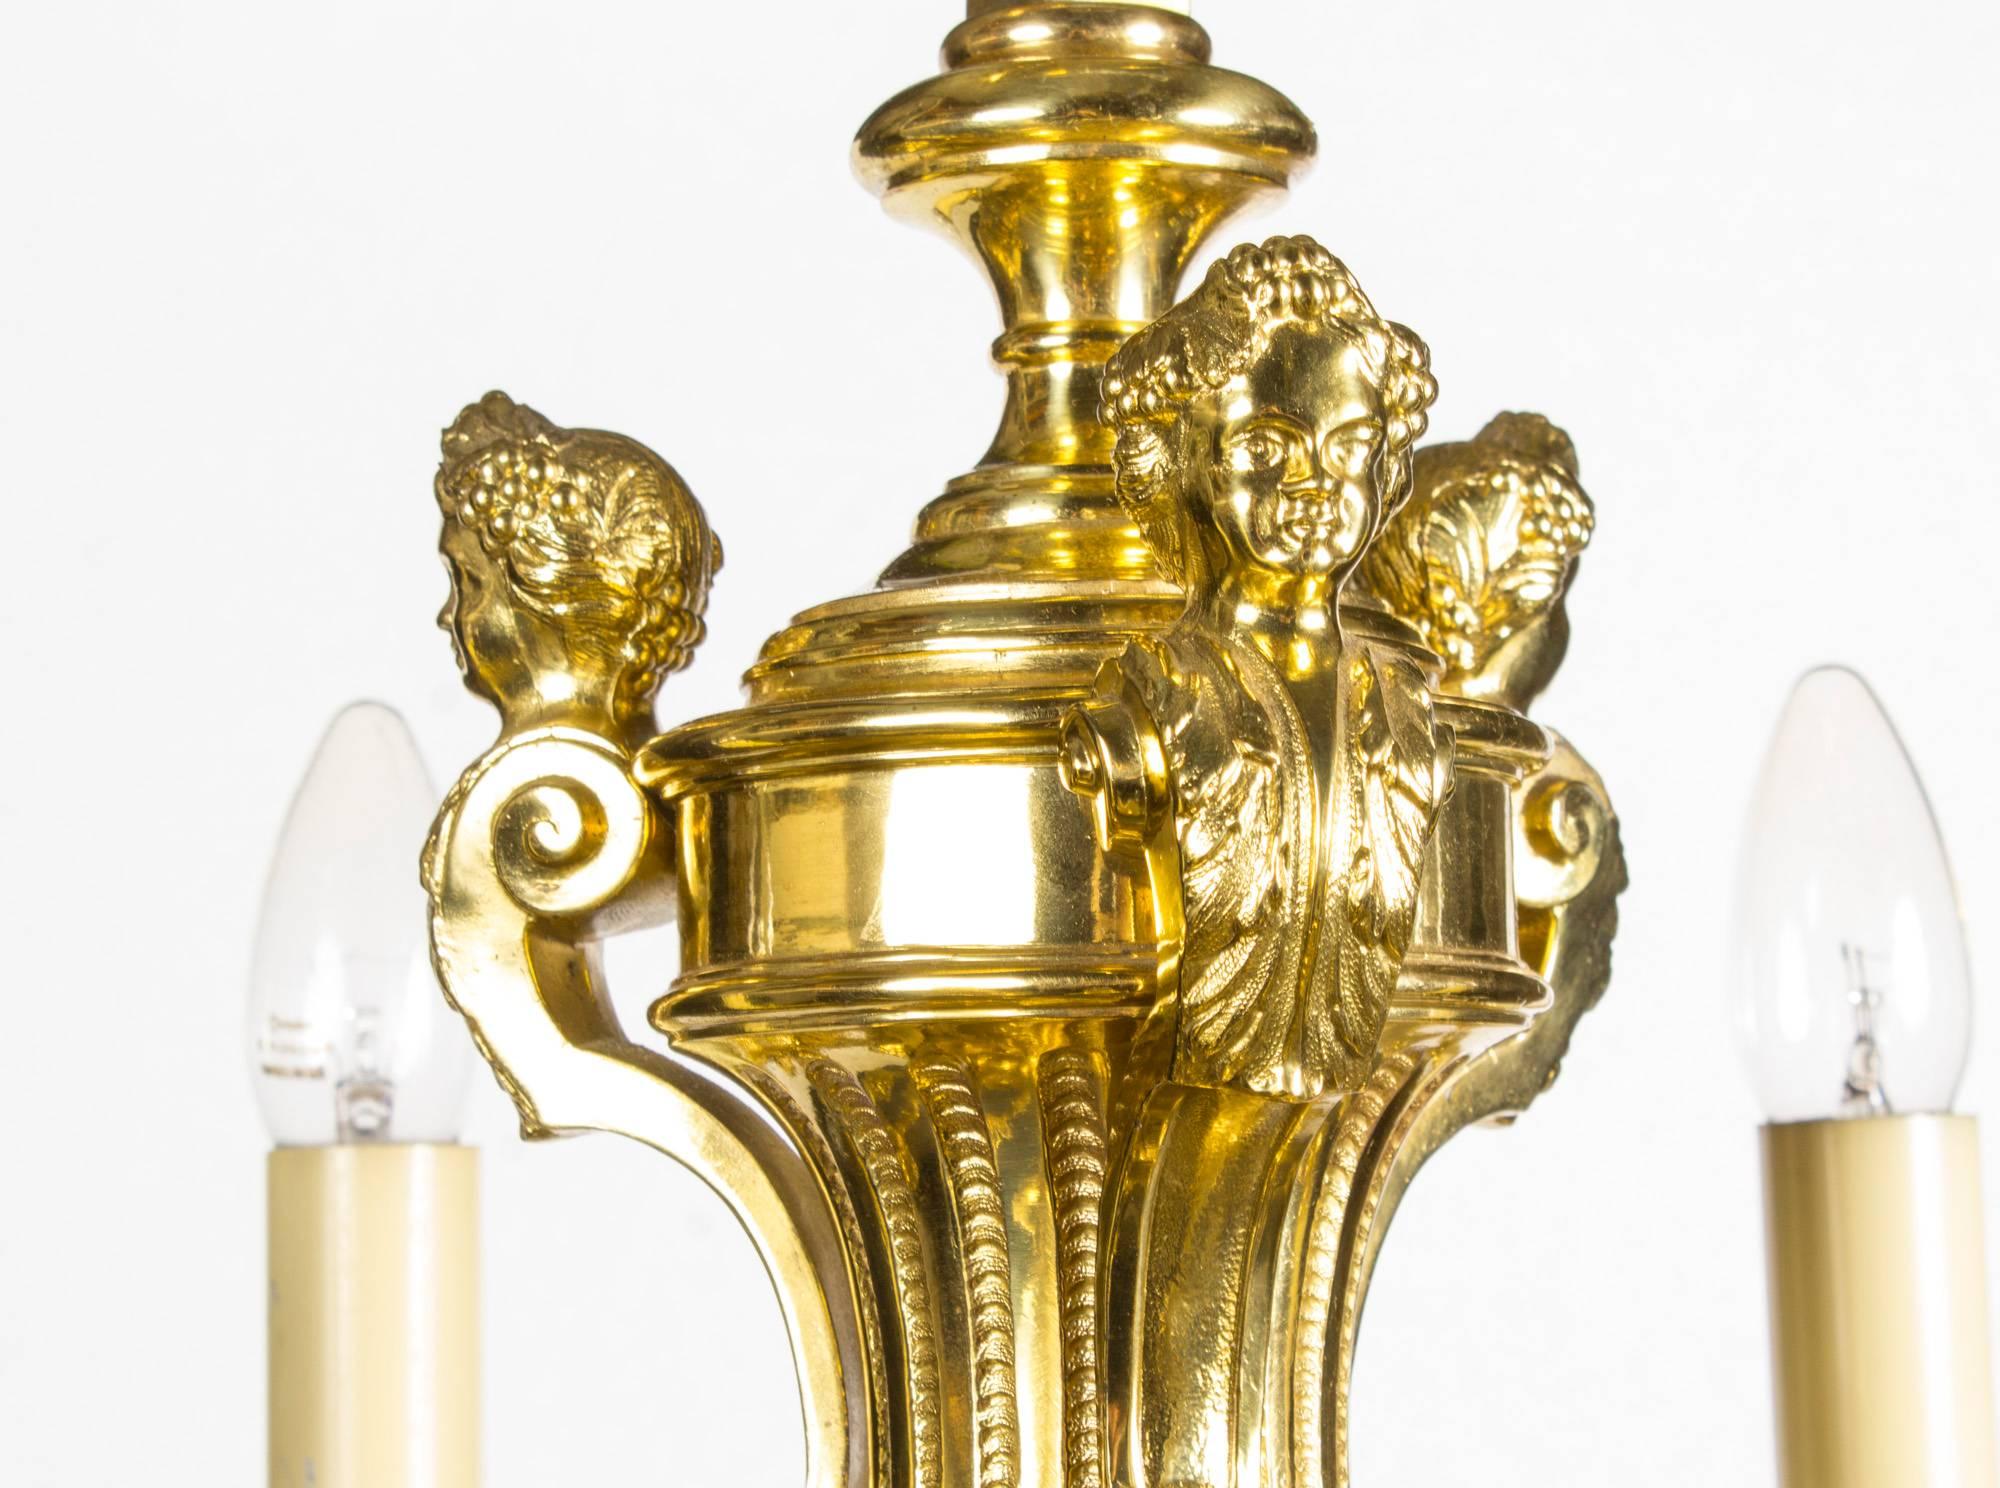 Il s'agit d'un lustre français très décoratif de style Louis XIV à douze branches en bronze doré, datant d'environ 1900.

Partant d'une colonne centrale, la partie supérieure est ornée de trois cariatides féminines entrecoupées de feuillages et de